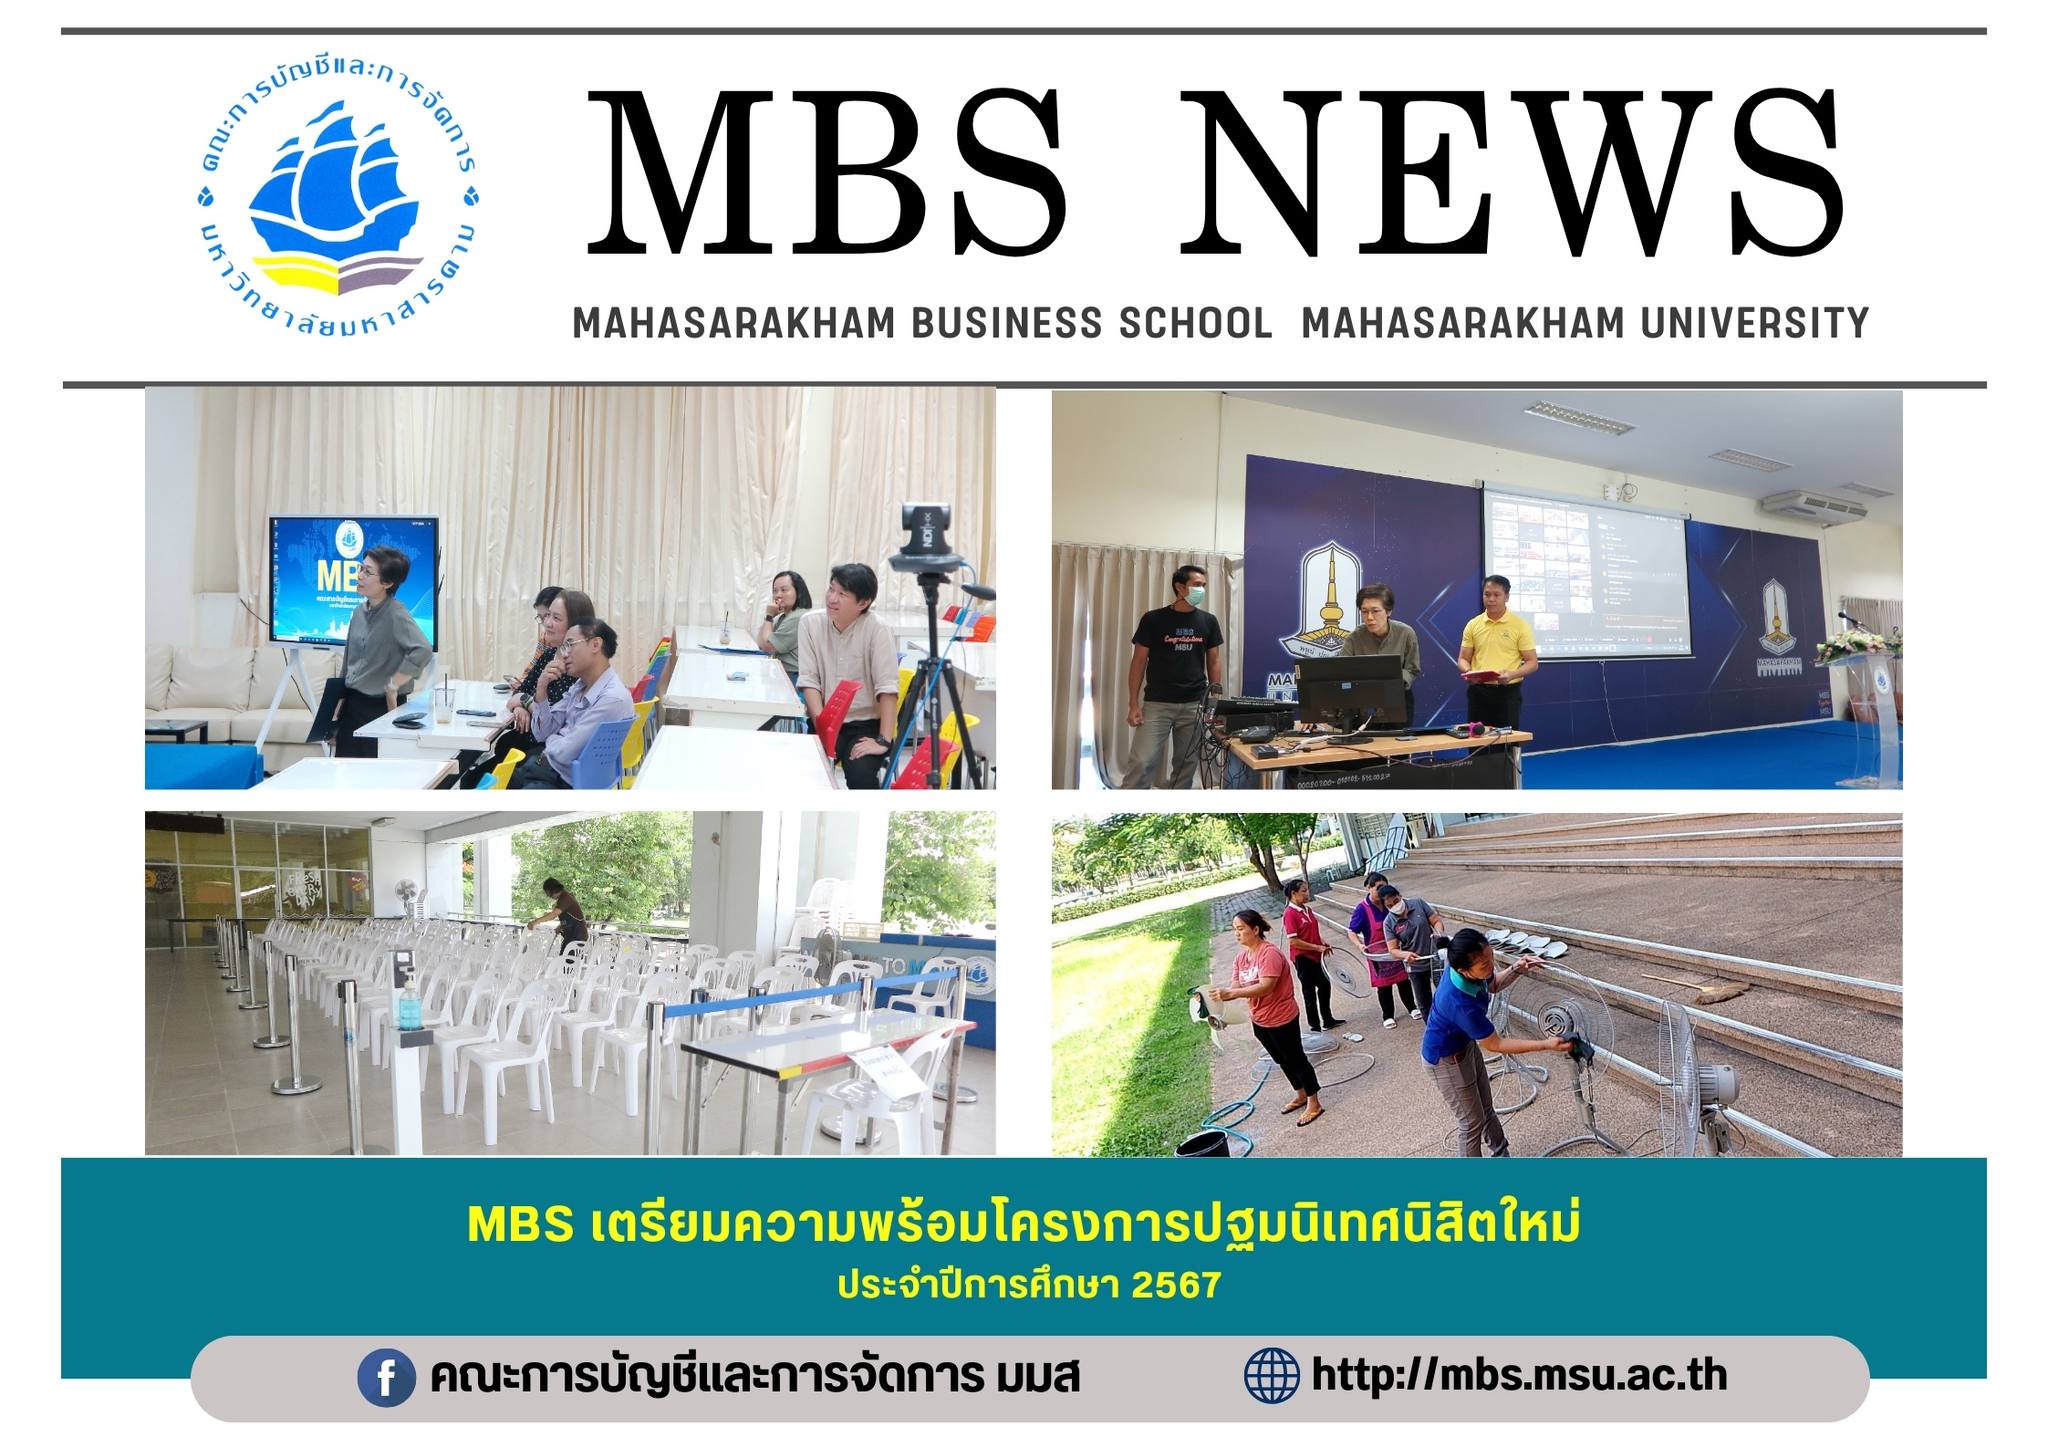 MBS เตรียมความพร้อมโครงการปฐมนิเทศนิสิตใหม่ ประจำปีการศึกษา 2567